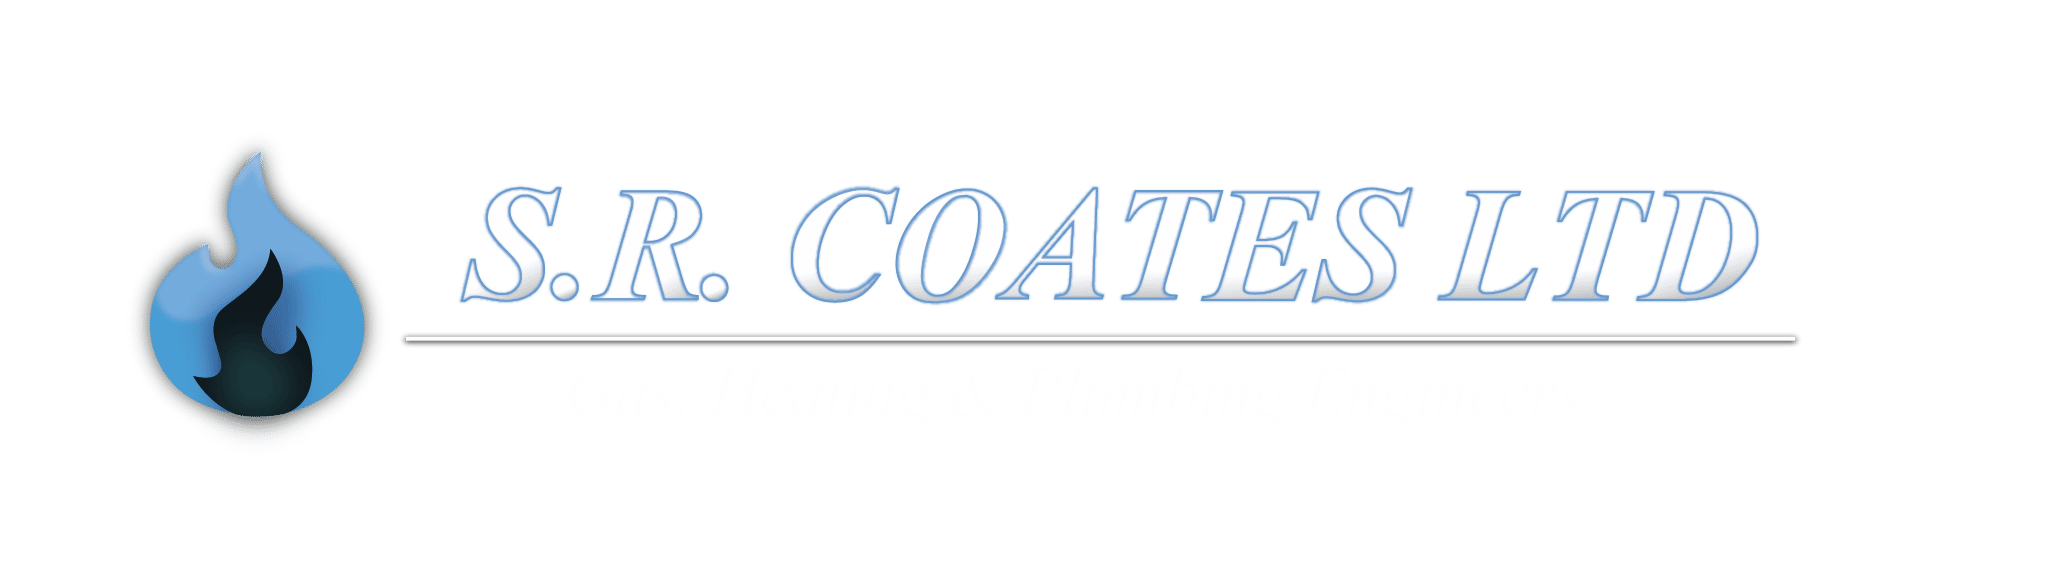 SR Coates Plumbing and Heating